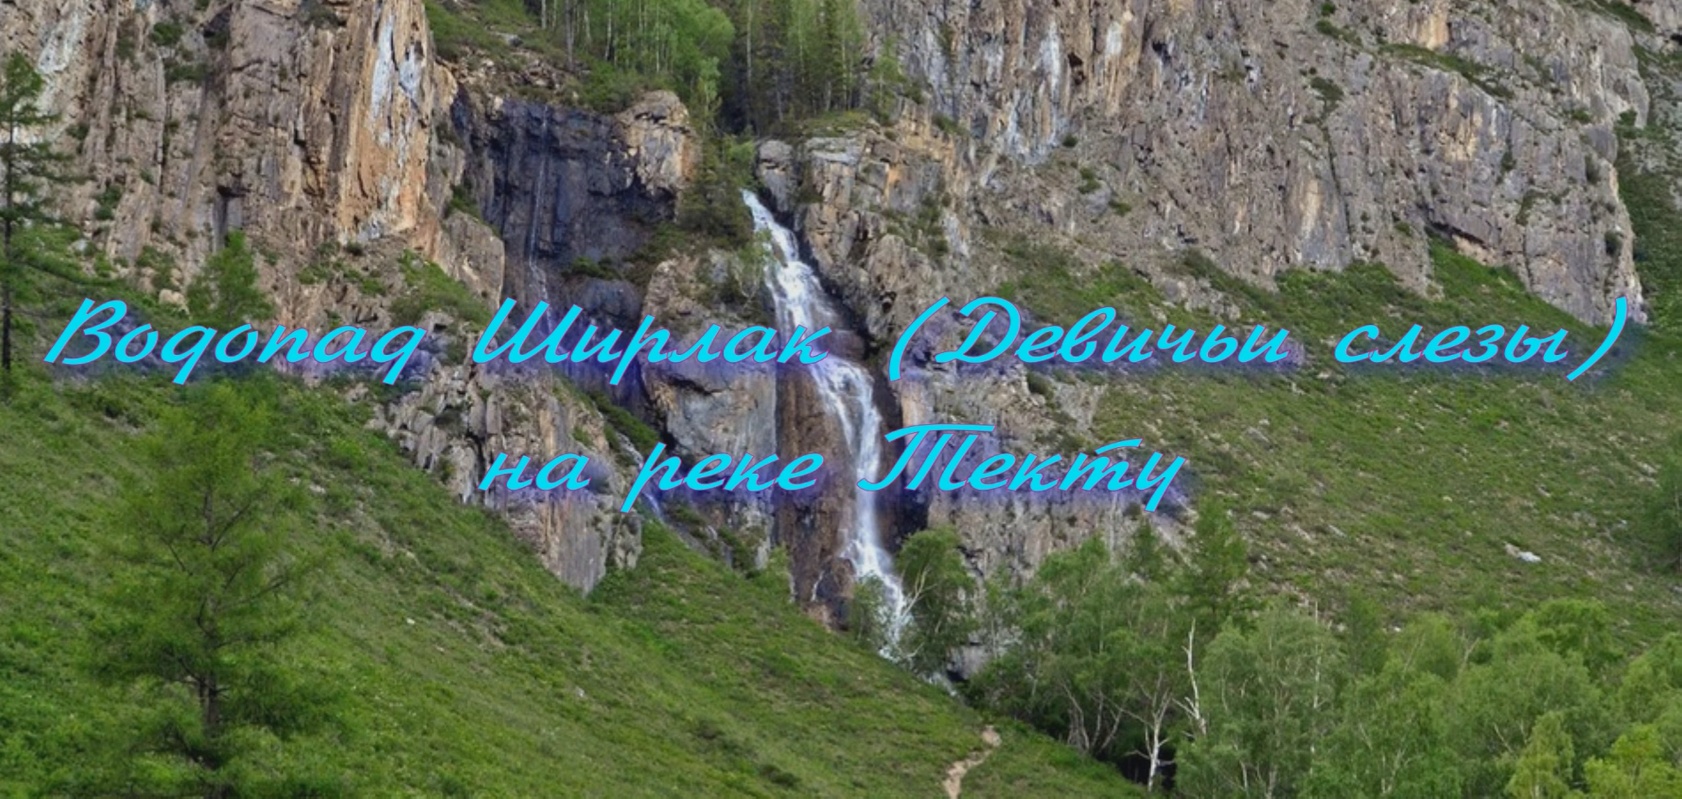 Водопад Ширлак  (Девичьи слезы) - доступная и популярная природная достопримечательность Алтая